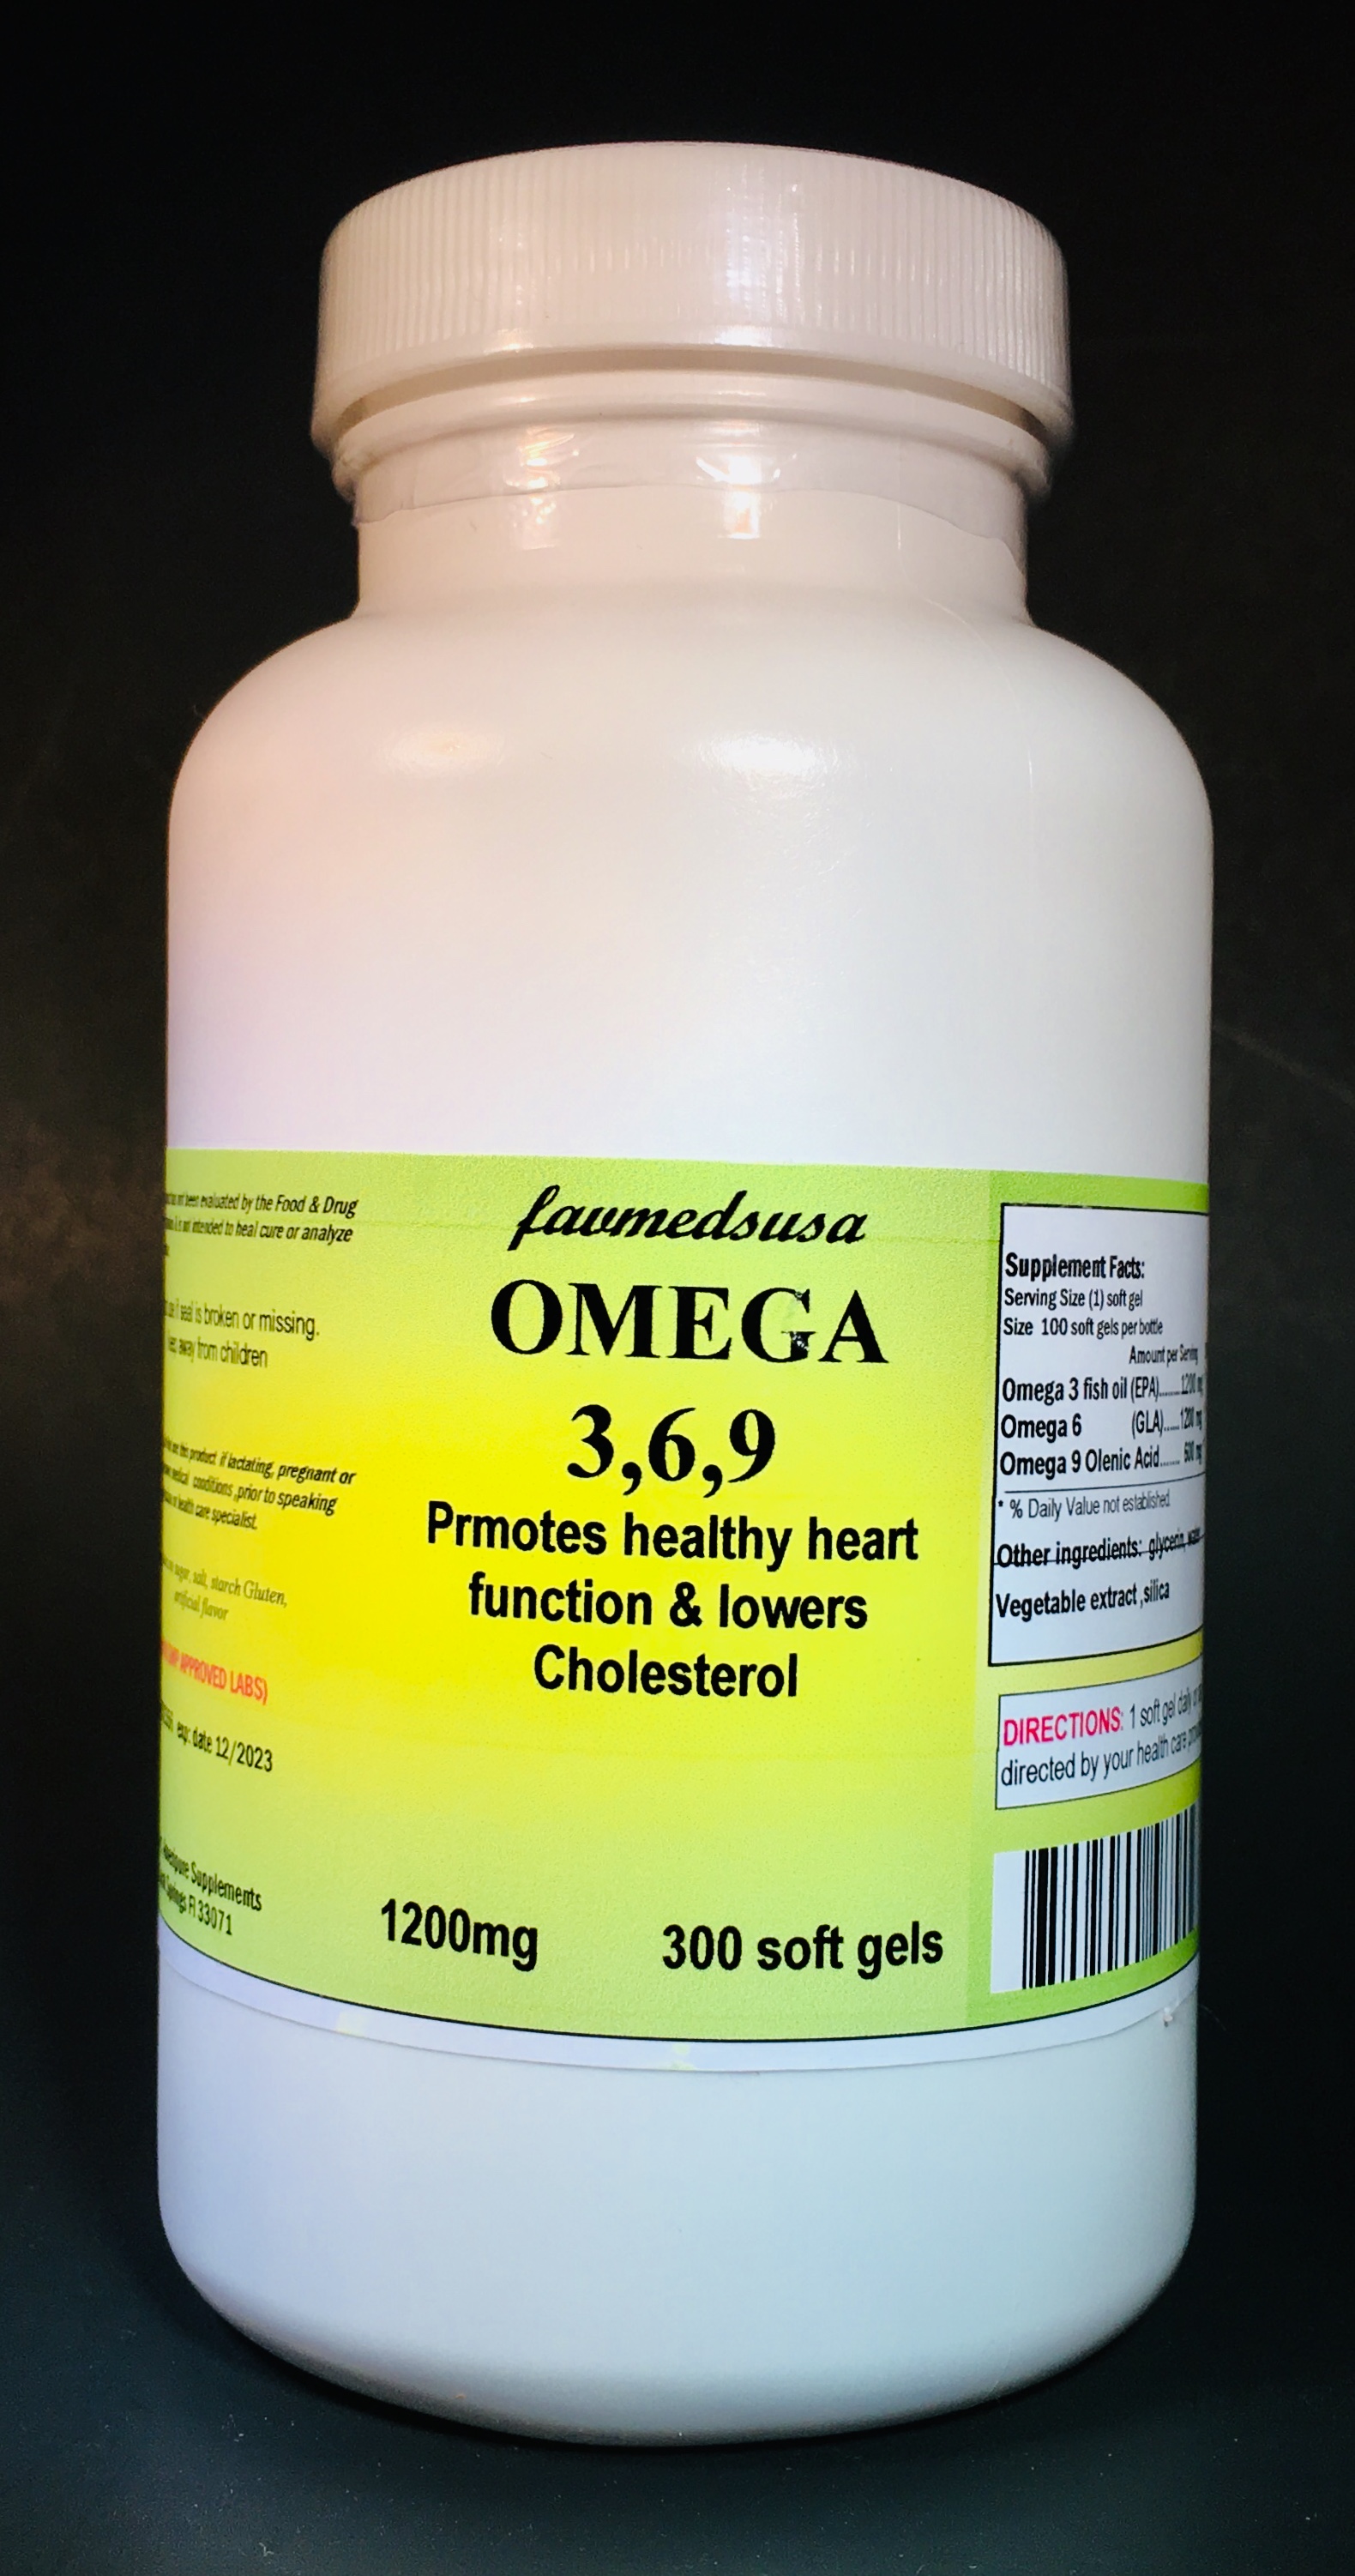 Omega 3,6,9 - 300 soft gels